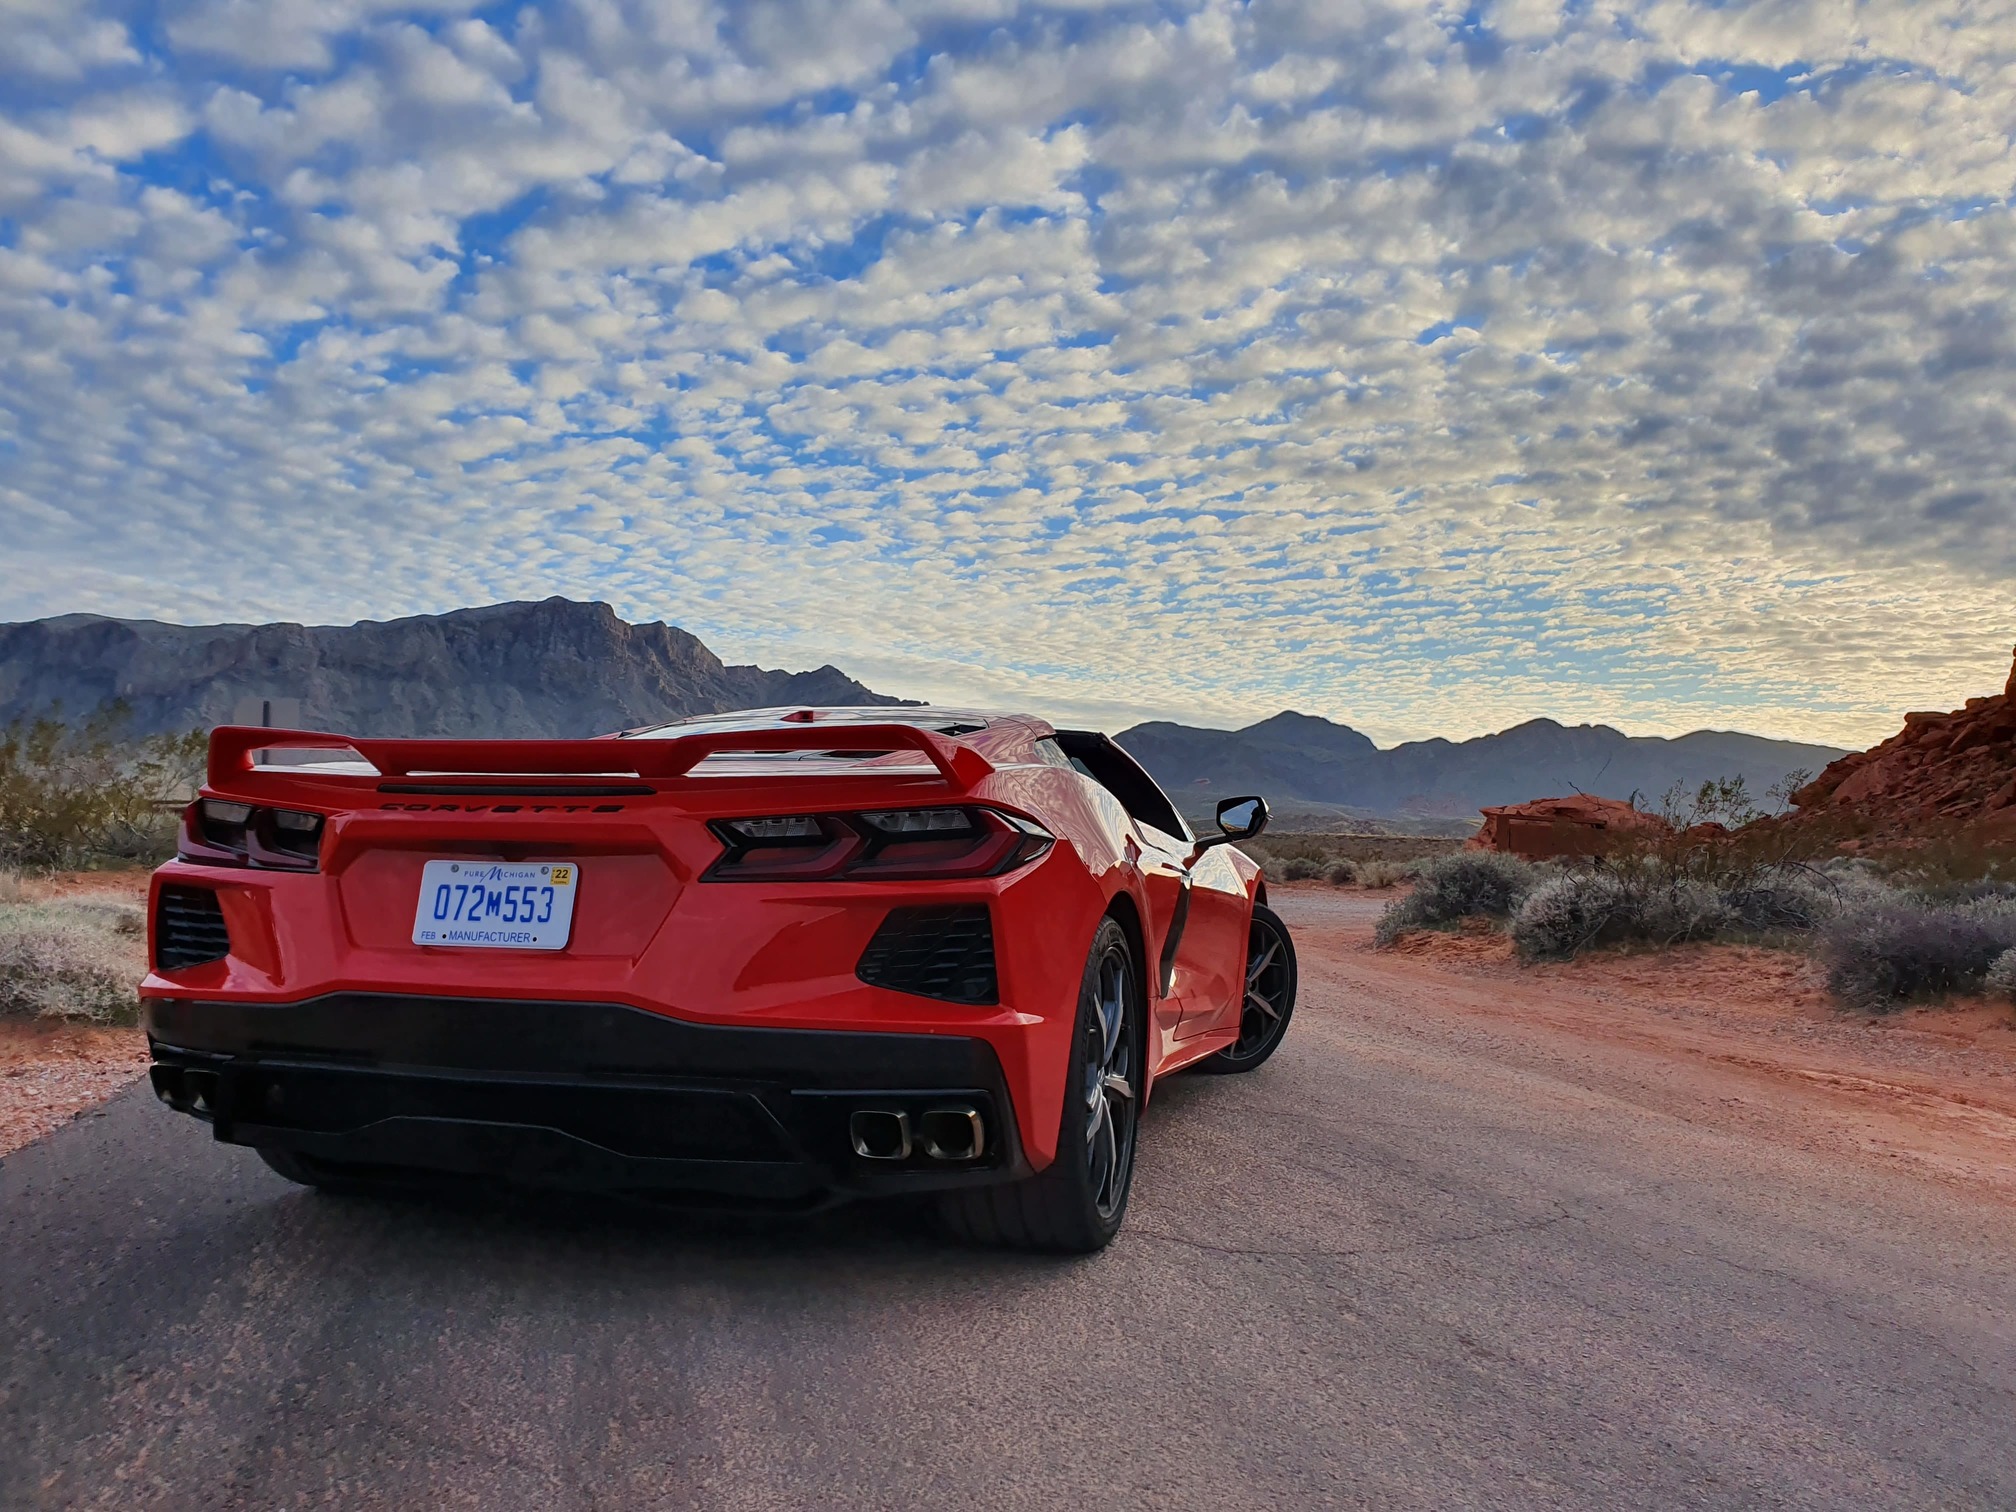 Chevrolet Corvette 2020 vermeho de traseira no deserto com um céu infinito com nuvens